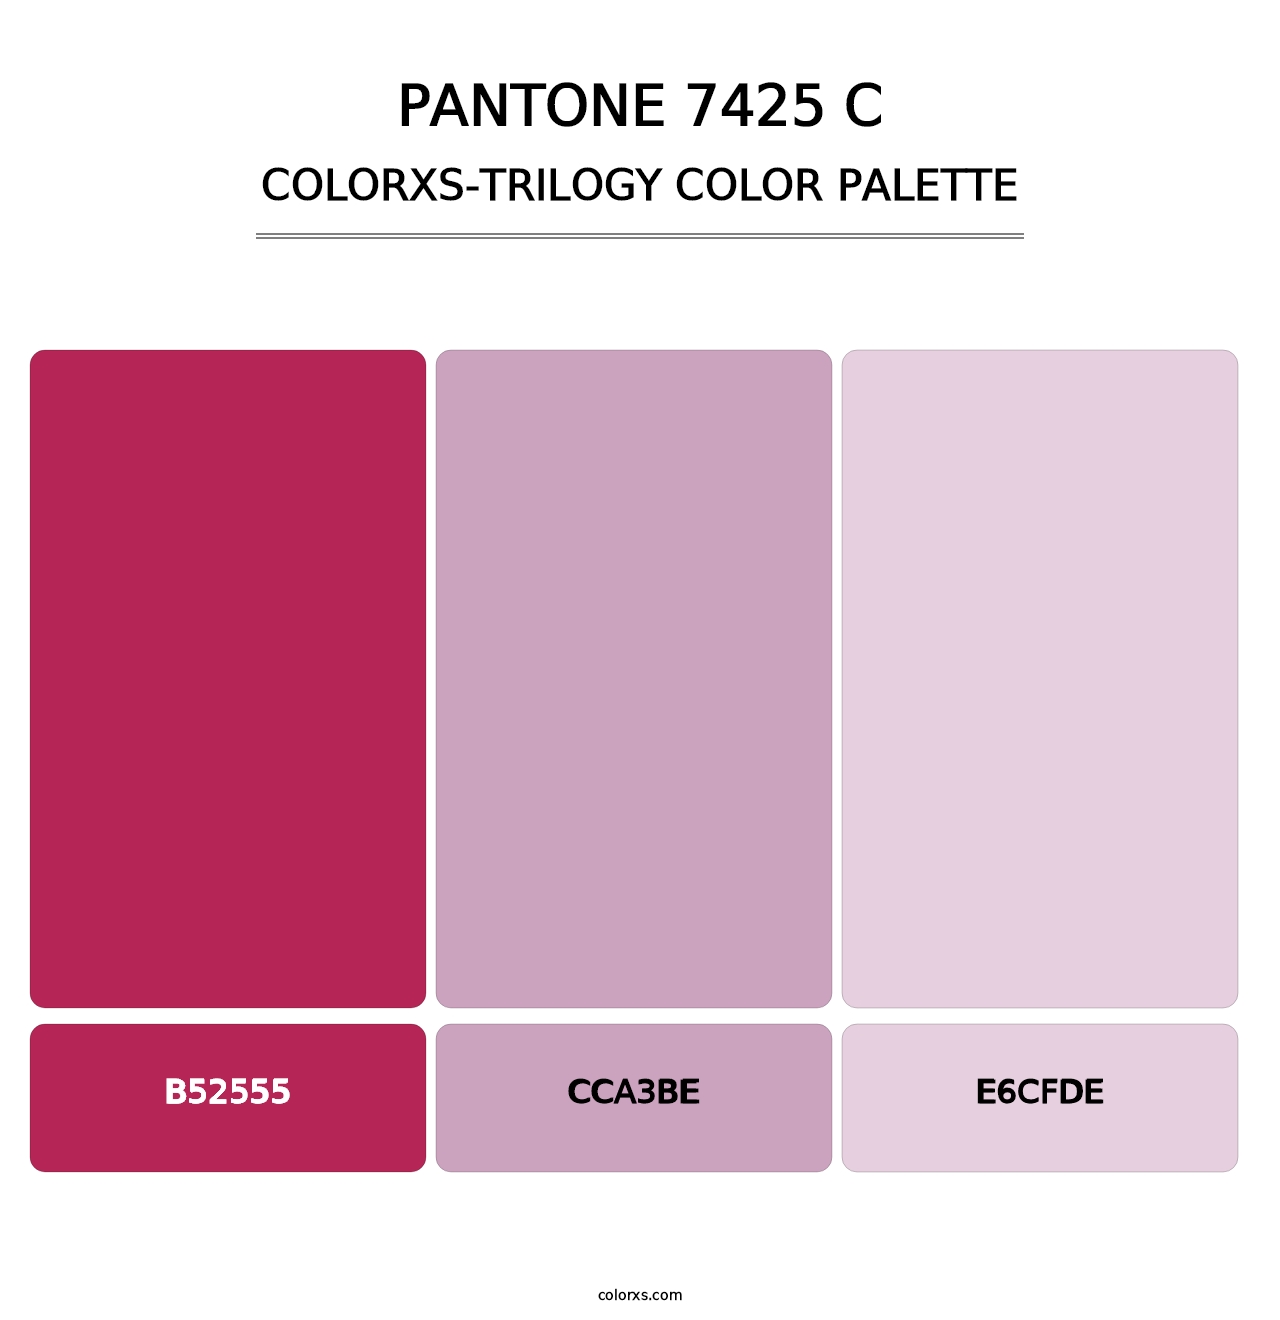 PANTONE 7425 C - Colorxs Trilogy Palette